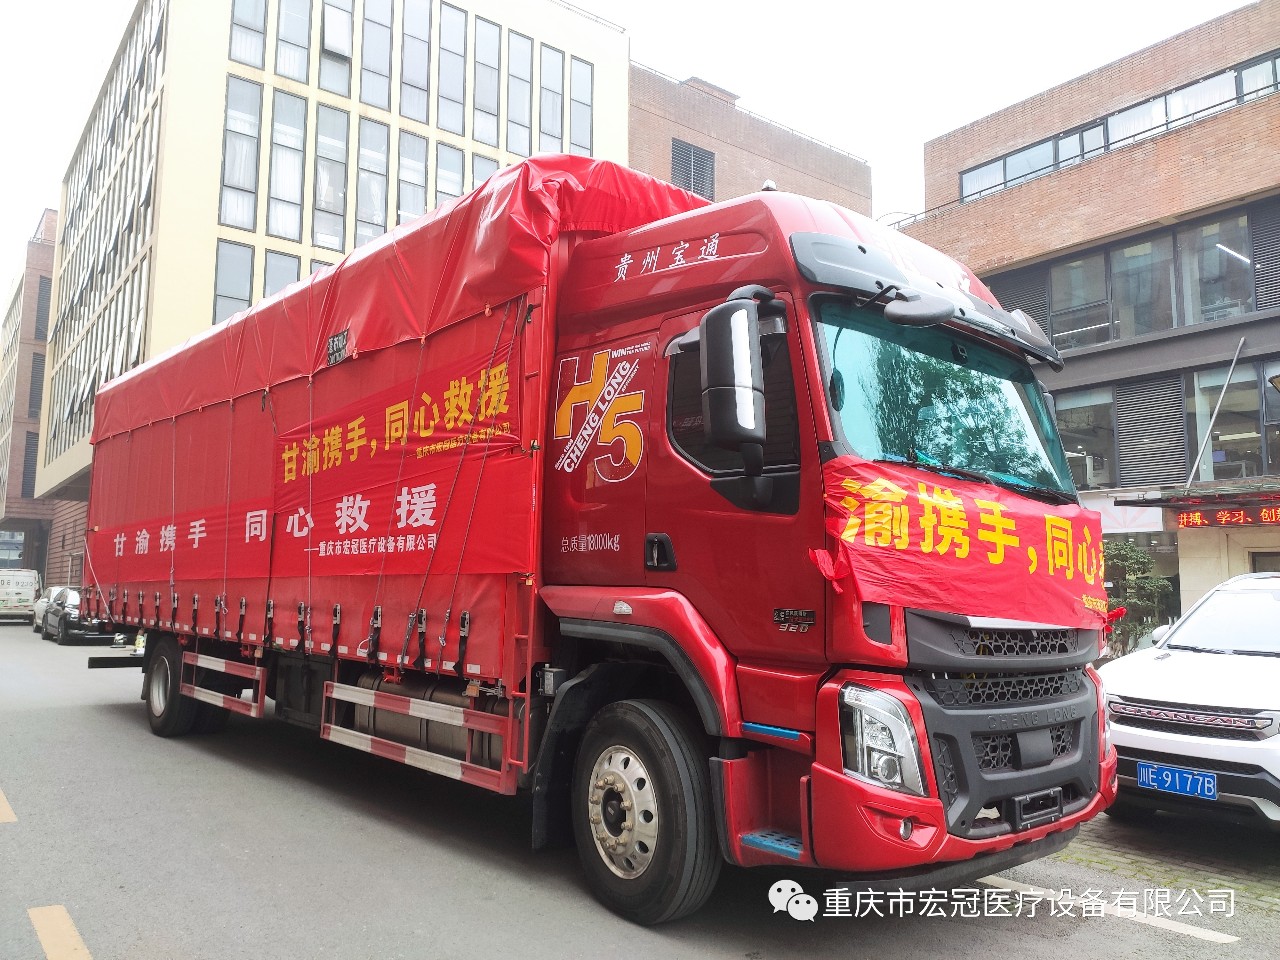 Chongqing Hongguan Medical Equipment Co., Ltd. သည် Gansu ရှိ သဘာဝဘေးသင့်ဒေသများကို ထောက်ပံ့ရန်အတွက် ယွမ် 700,000 ကျော် လှူဒါန်းခဲ့ပါသည်။